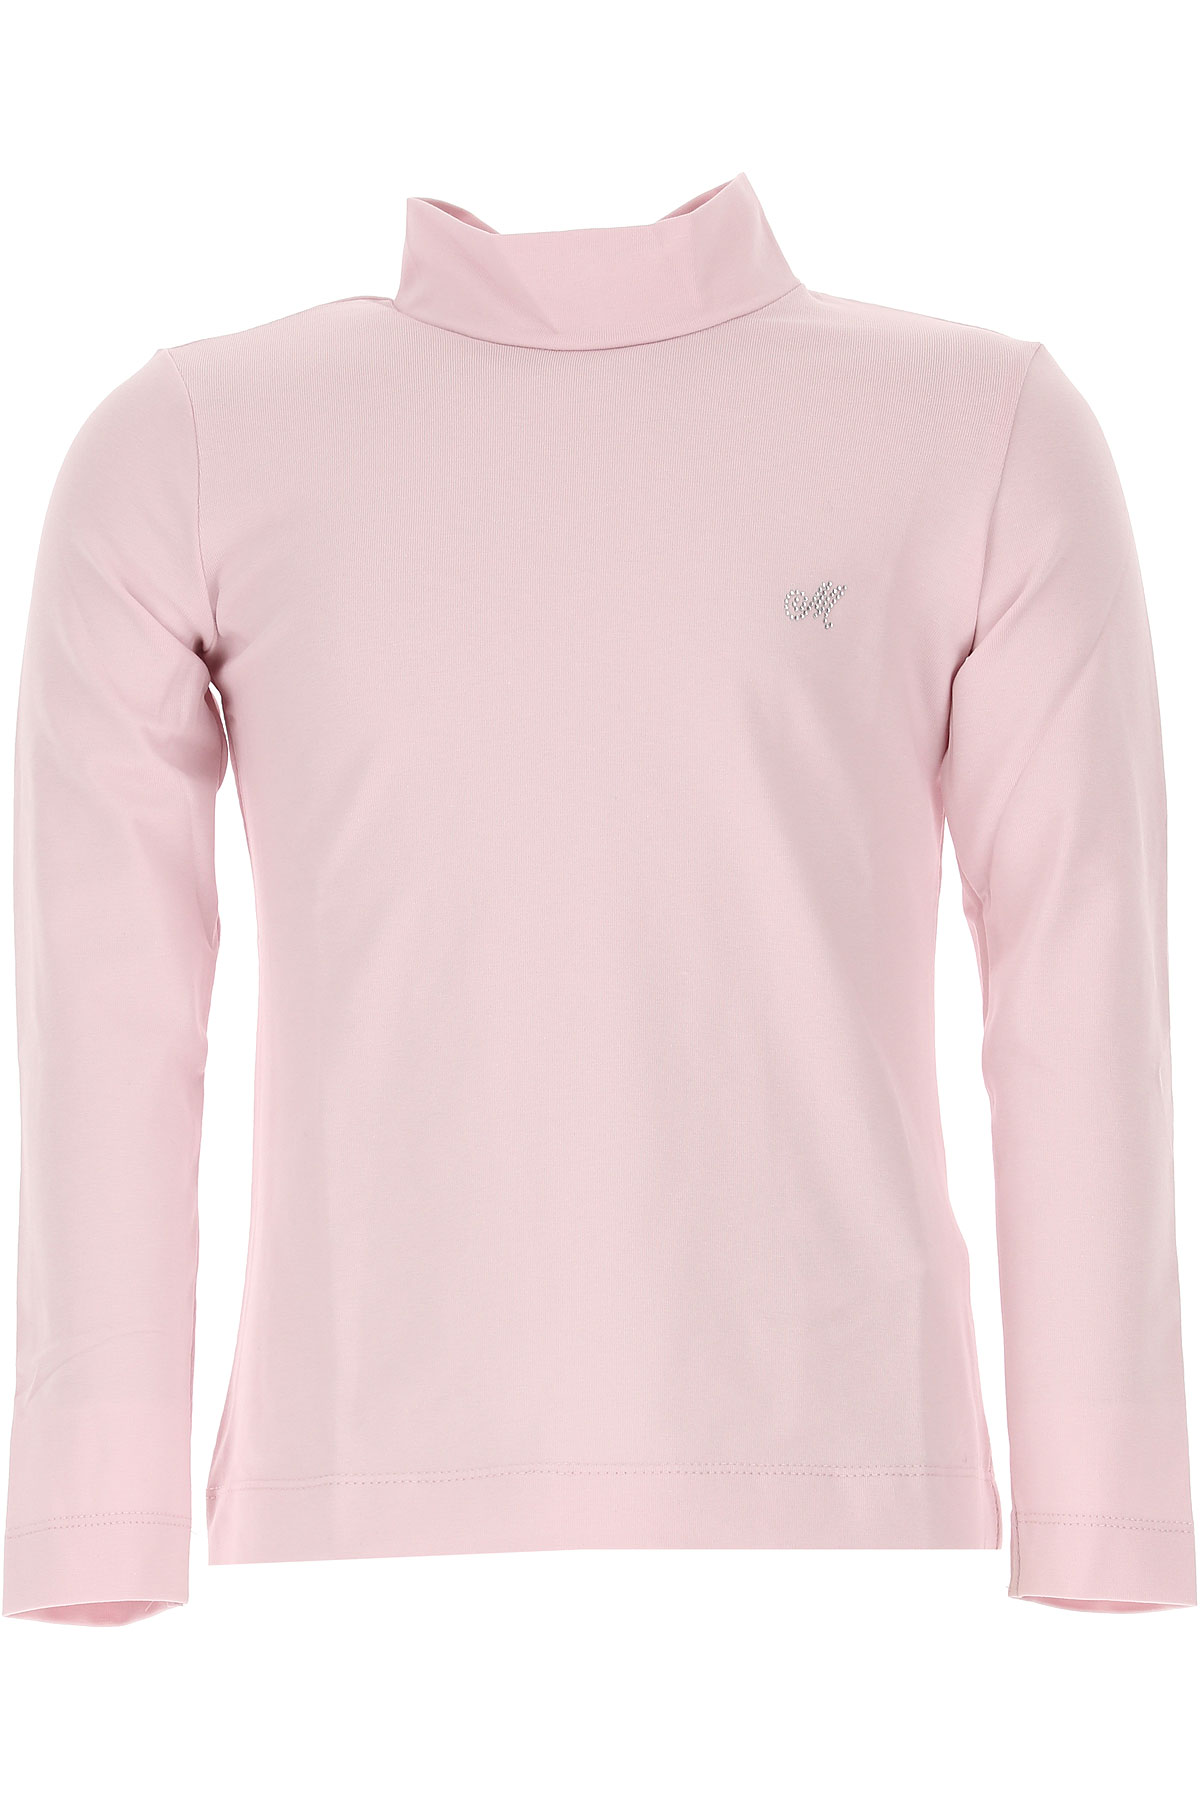 Monnalisa Kinder T-Shirt für Mädchen Günstig im Outlet Sale, Pink, Baumwolle, 2017, 2Y 5Y